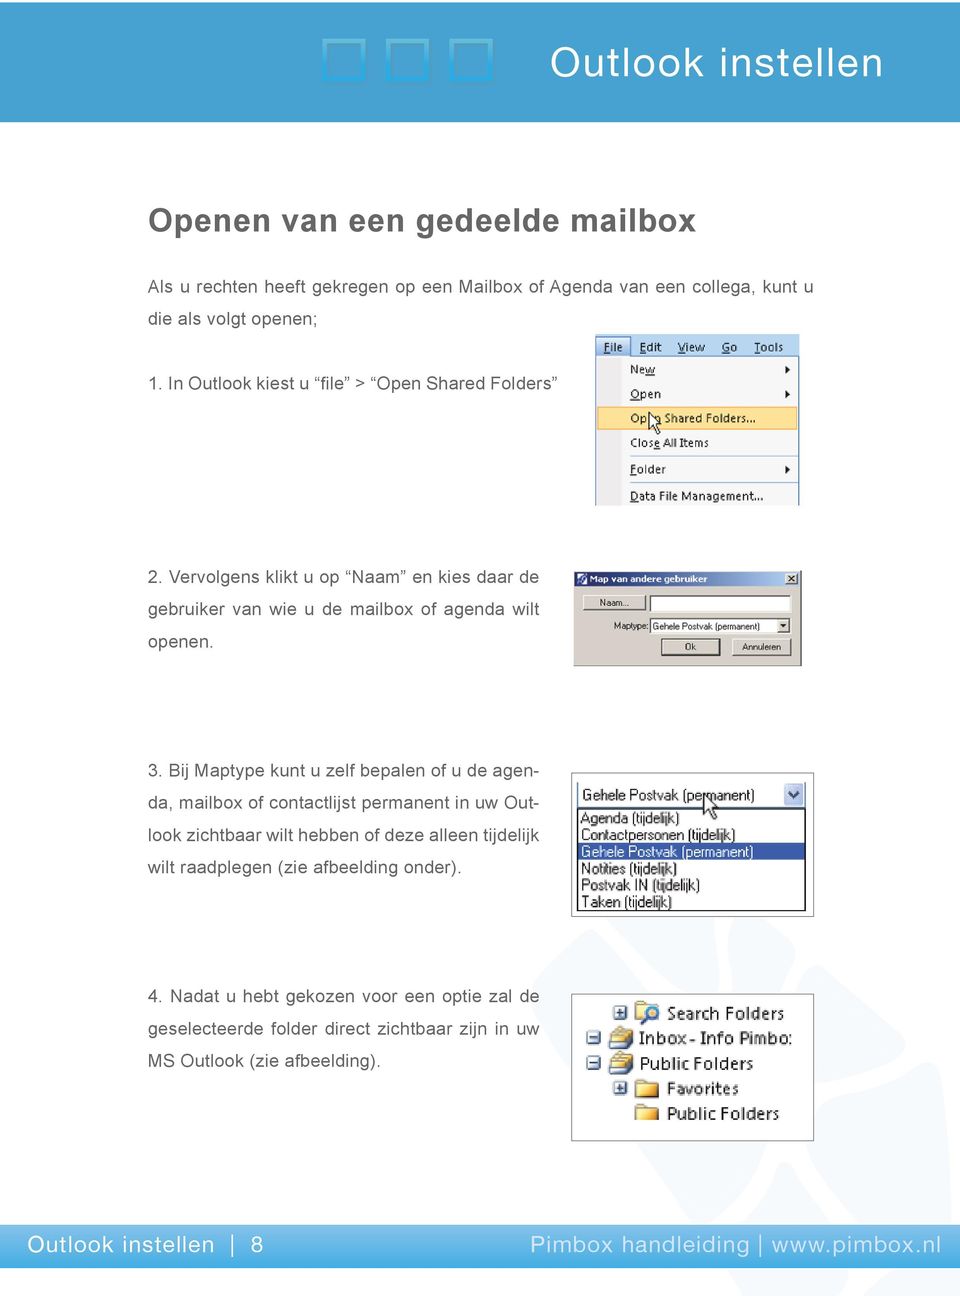 Bij Maptype kunt u zelf bepalen of u de agenda, mailbox of contactlijst permanent in uw Outlook zichtbaar wilt hebben of deze alleen tijdelijk wilt